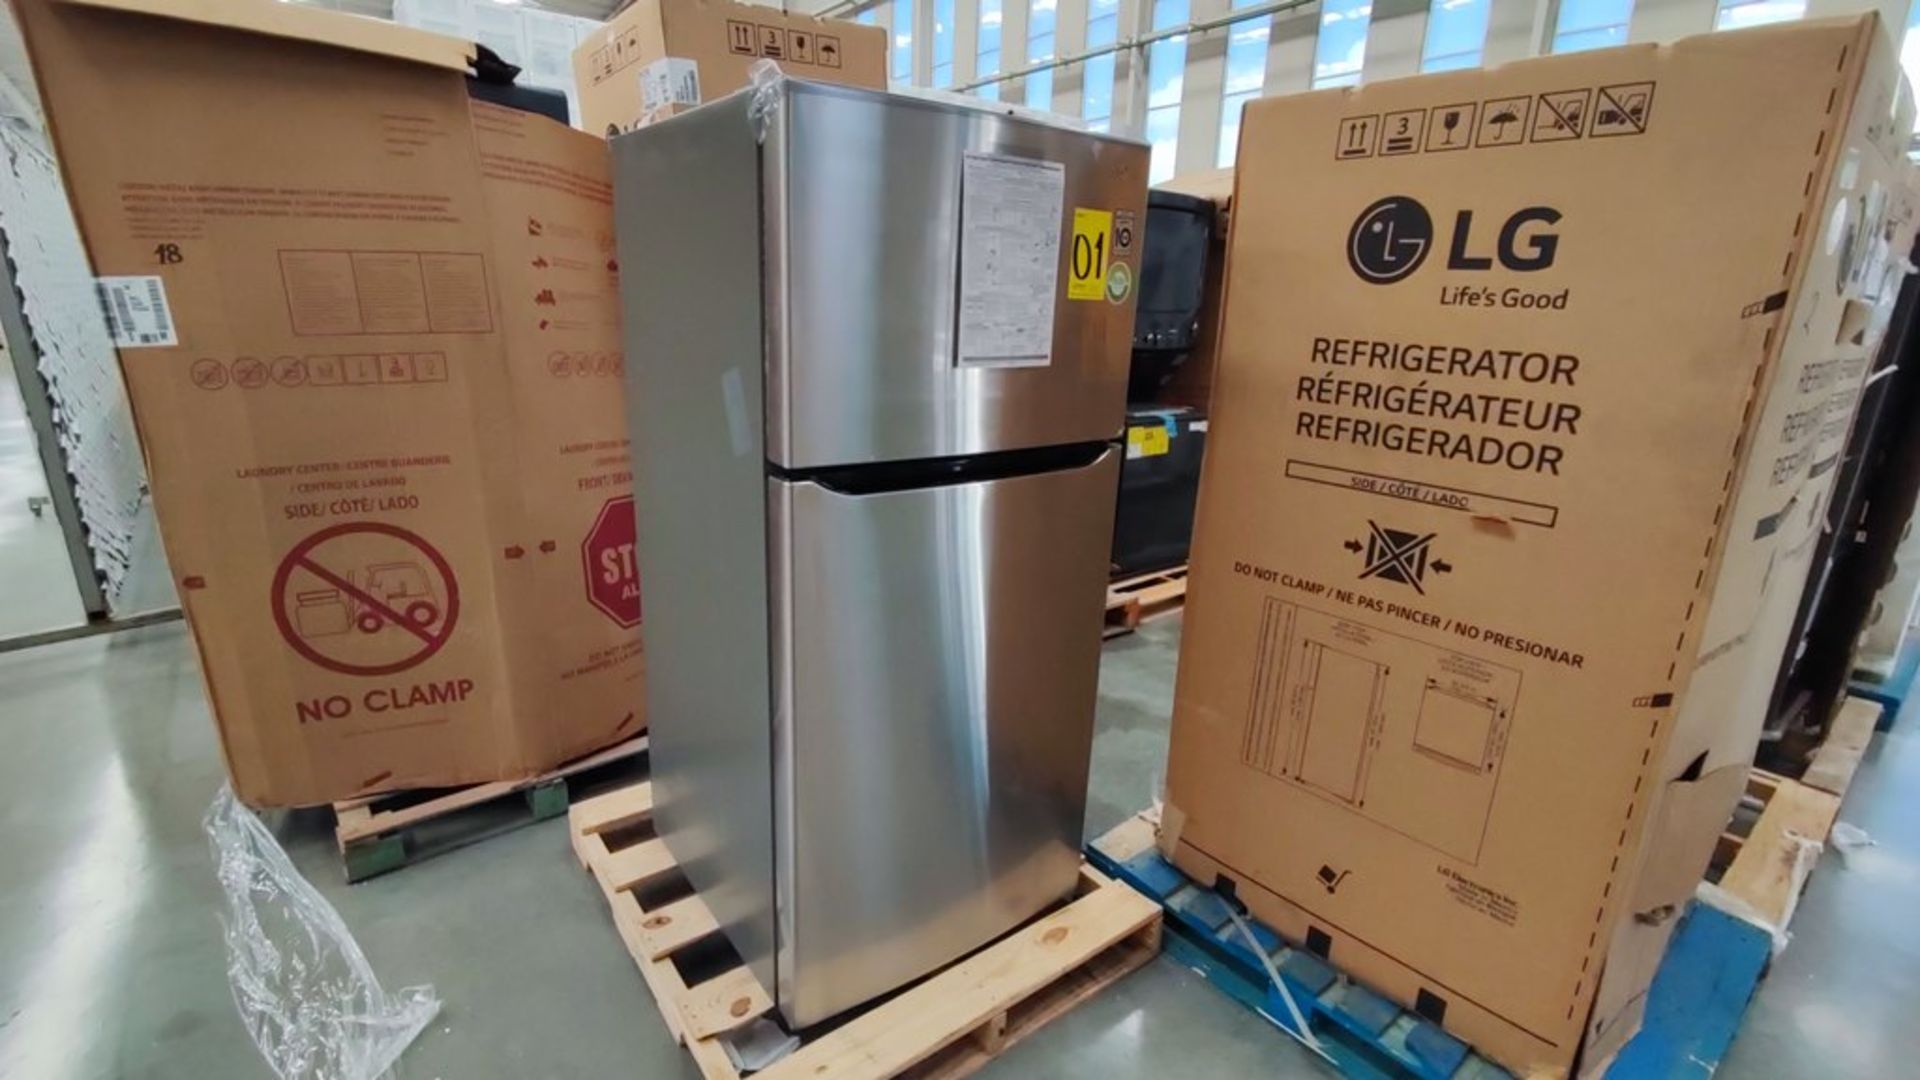 1 Refrigerador Marca LG, Modelo LT57BPSX, Serie 111MRVY3TY614, Color Gris, Favor de inspeccionar. ( - Image 3 of 11